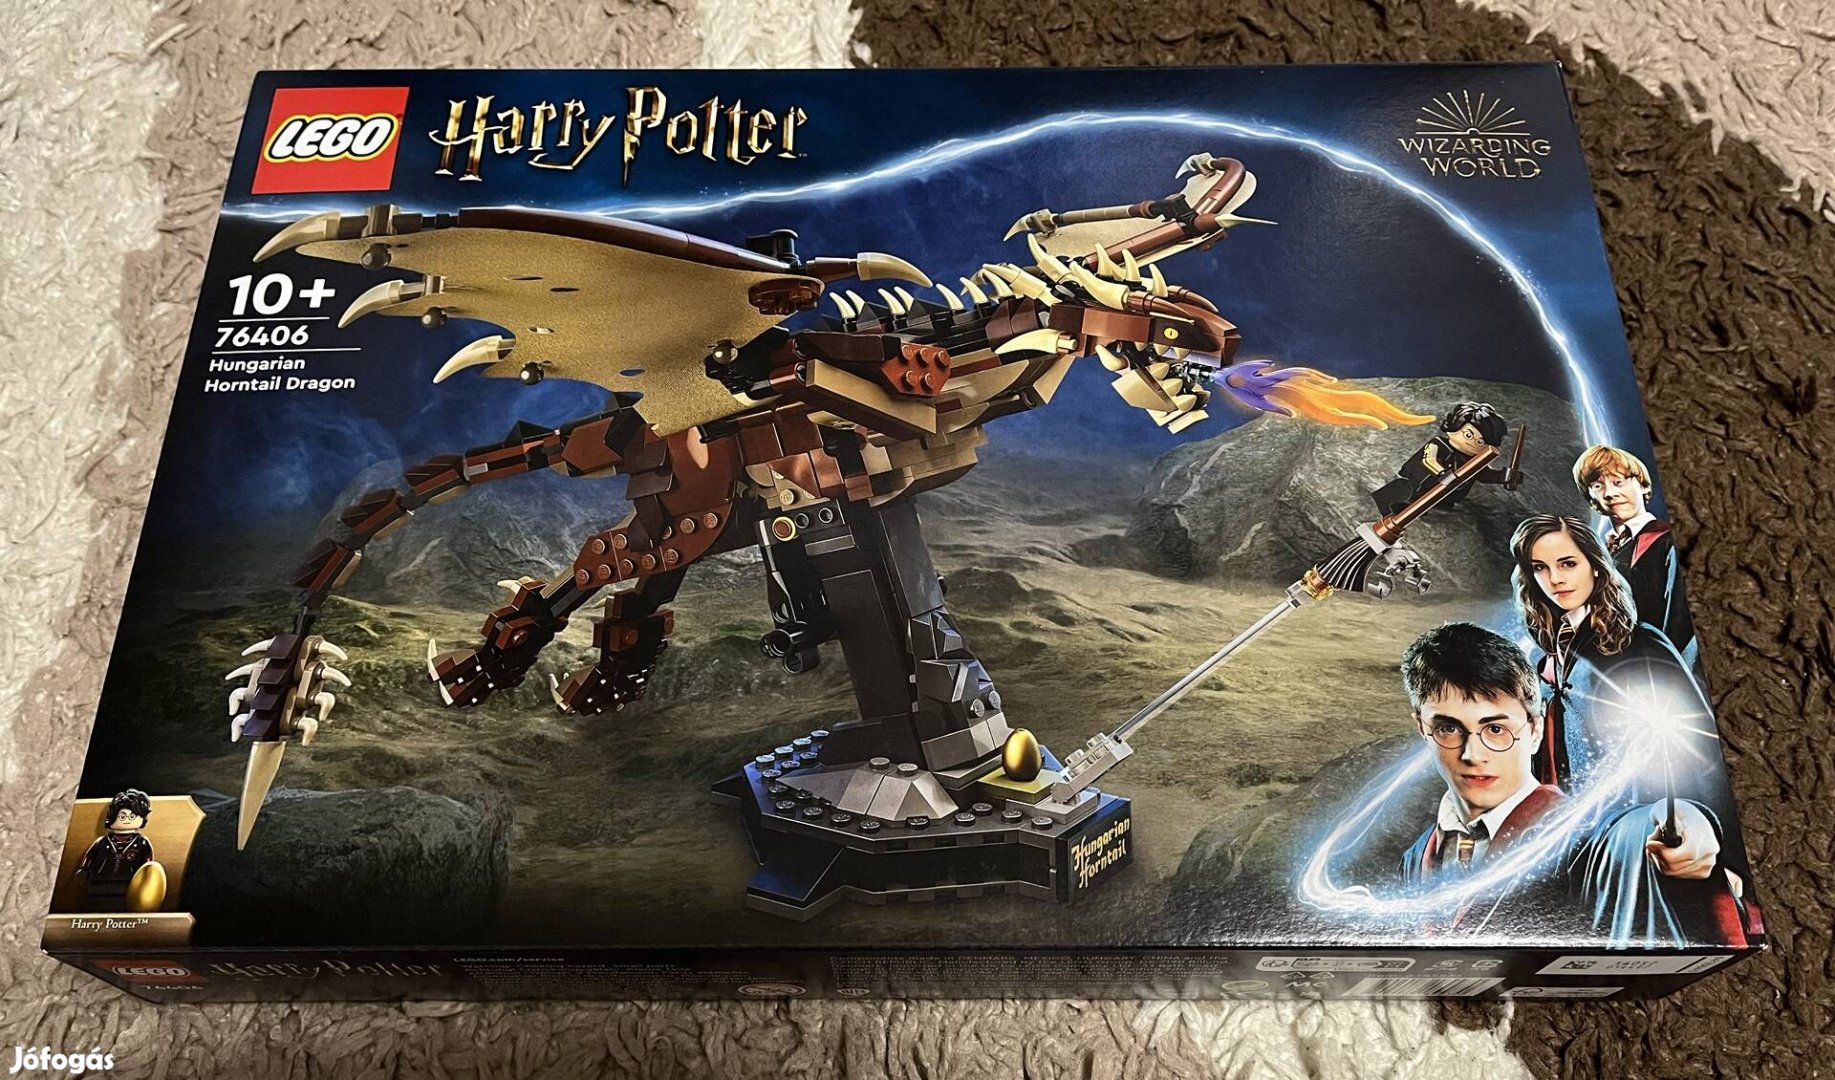 76406 Harry Potter - Magyar mennydörgő sárkány lego